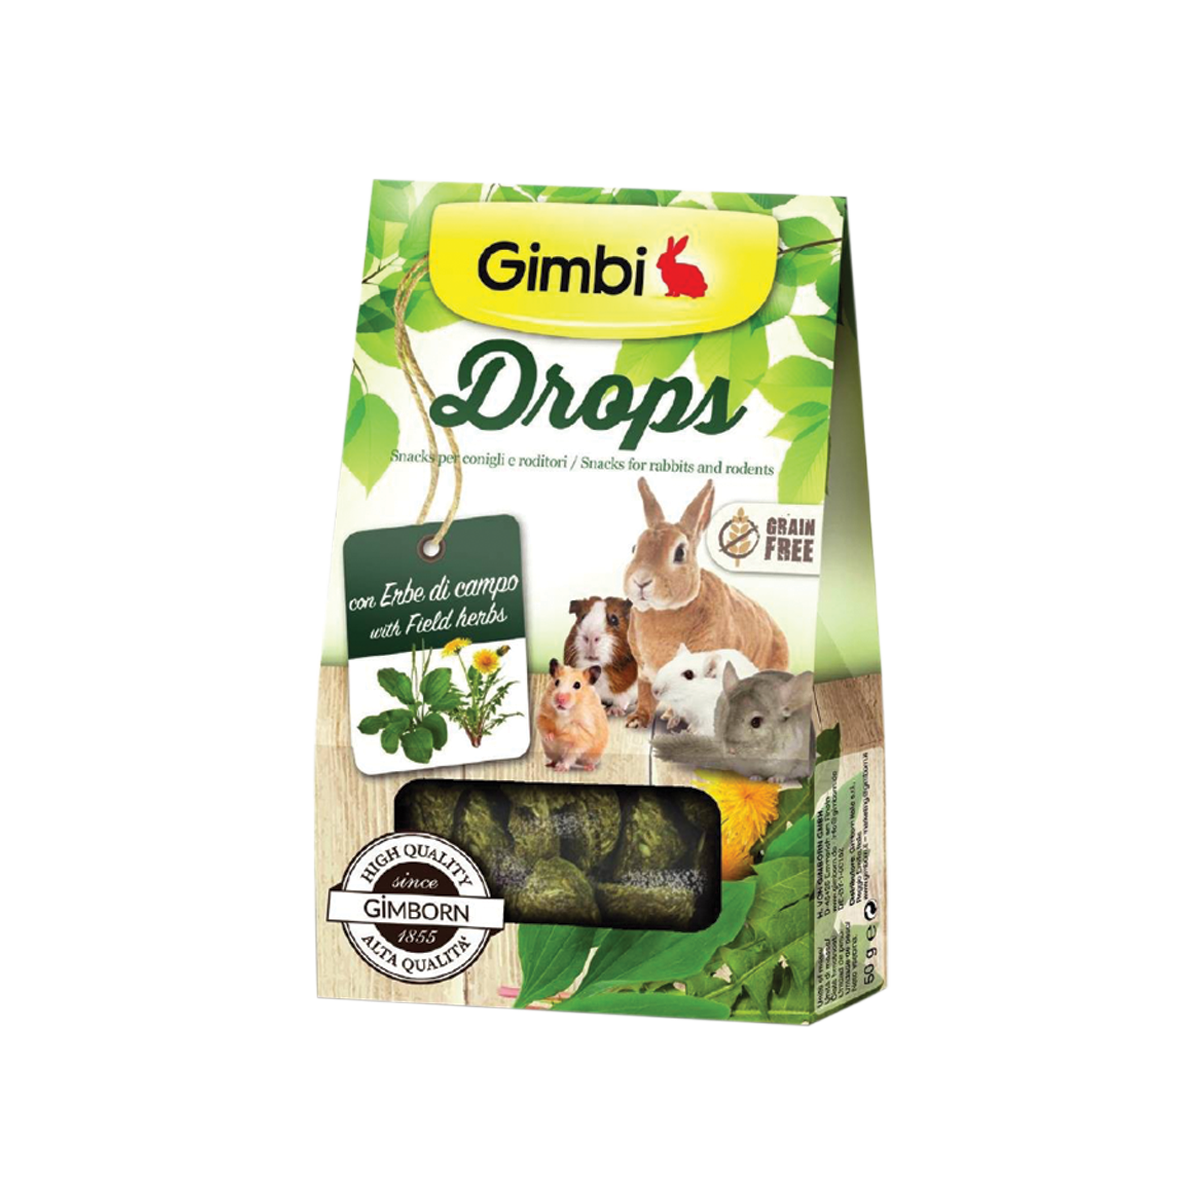 Gimbi Drops with Field Herbs กิมบิ ขนมขบเคี้ยวผสมสมุนไพร สำหรับกระต่ายและหนูสายพันธุ์เล็ก ขนาด 50 กรัม